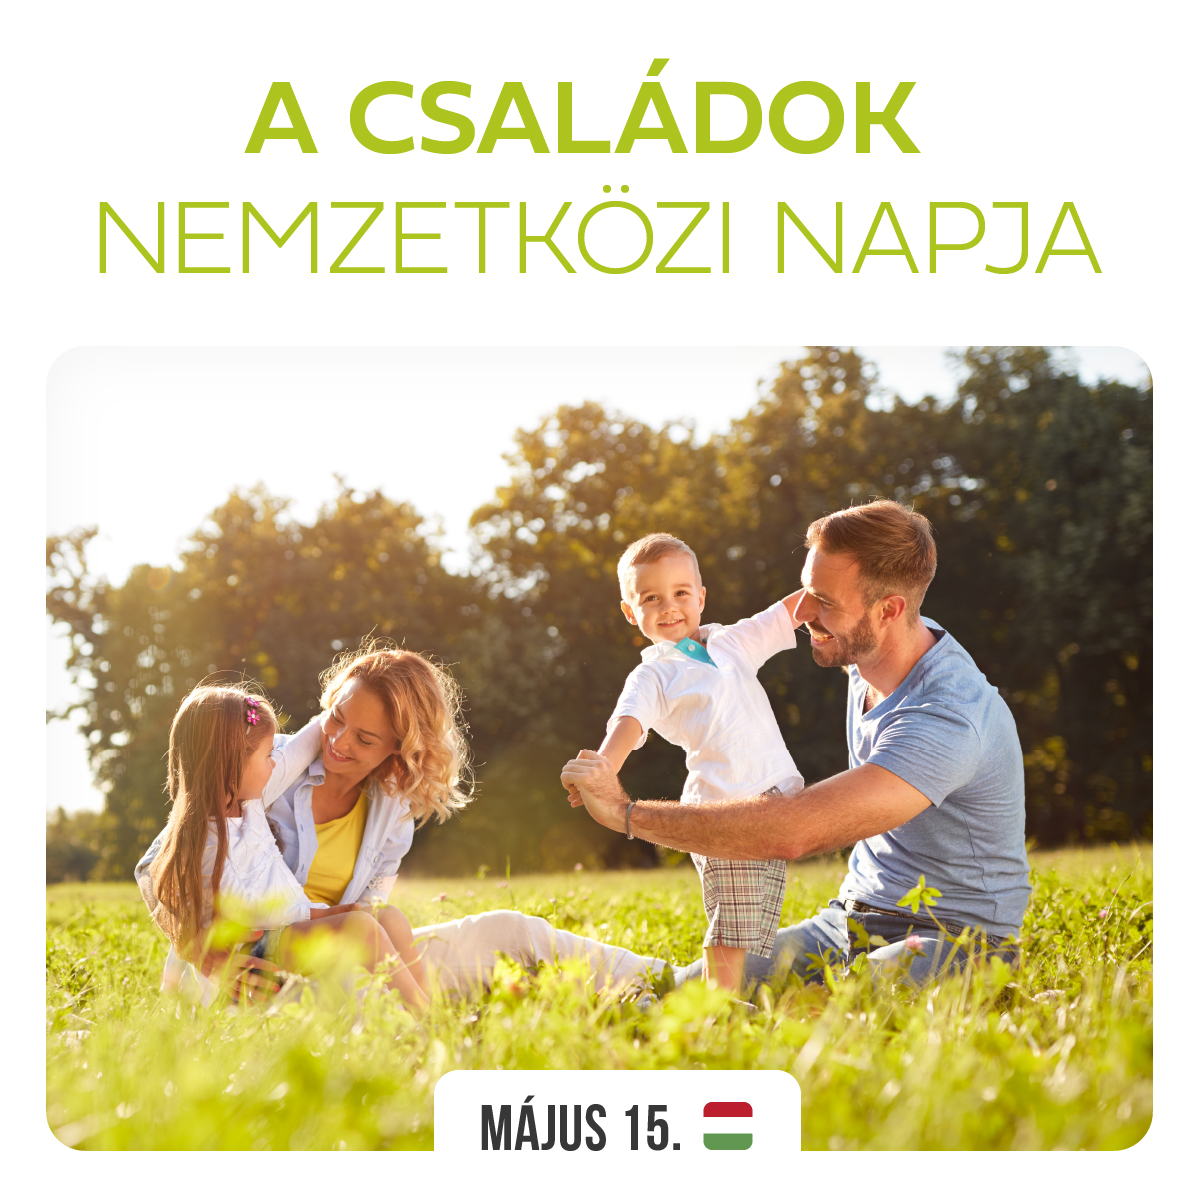 Mindent megteszünk annak érdekében, hogy minél könnyebb legyen családot alapítani és gyermeket nevelni Magyarországon.